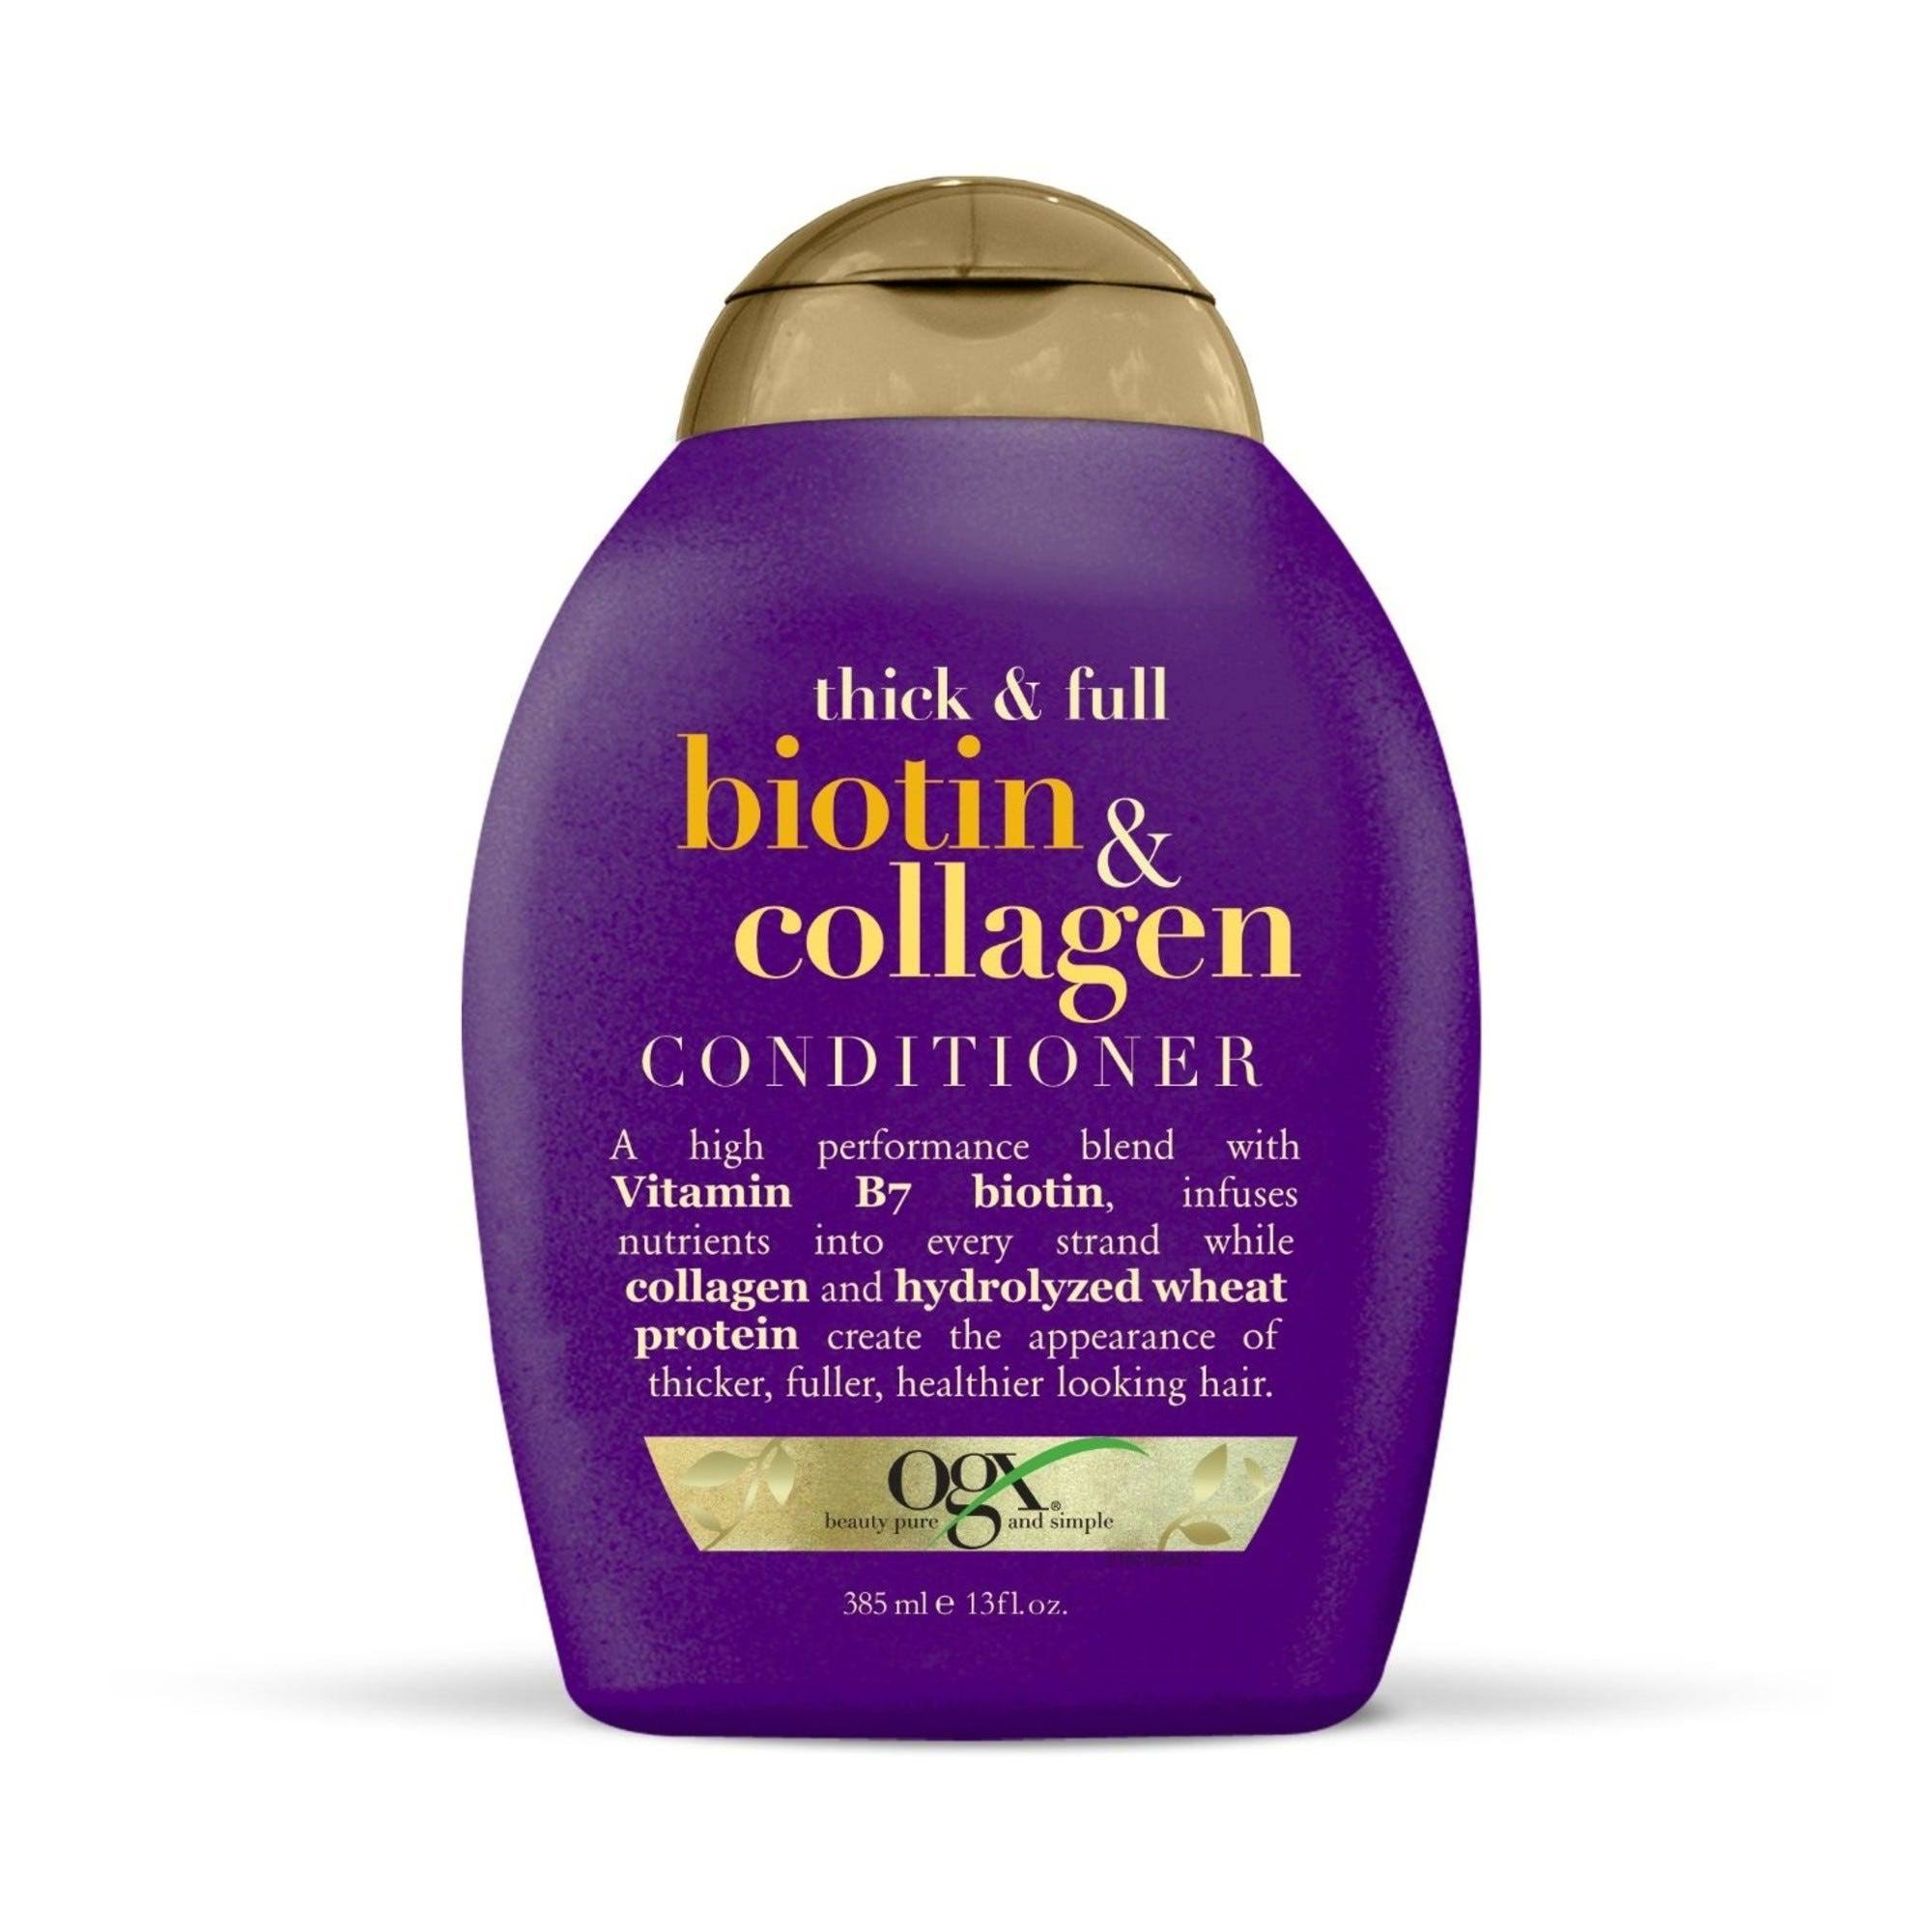 Ogx Thick & Full Biotin & Collagen Conditioner - 385ml